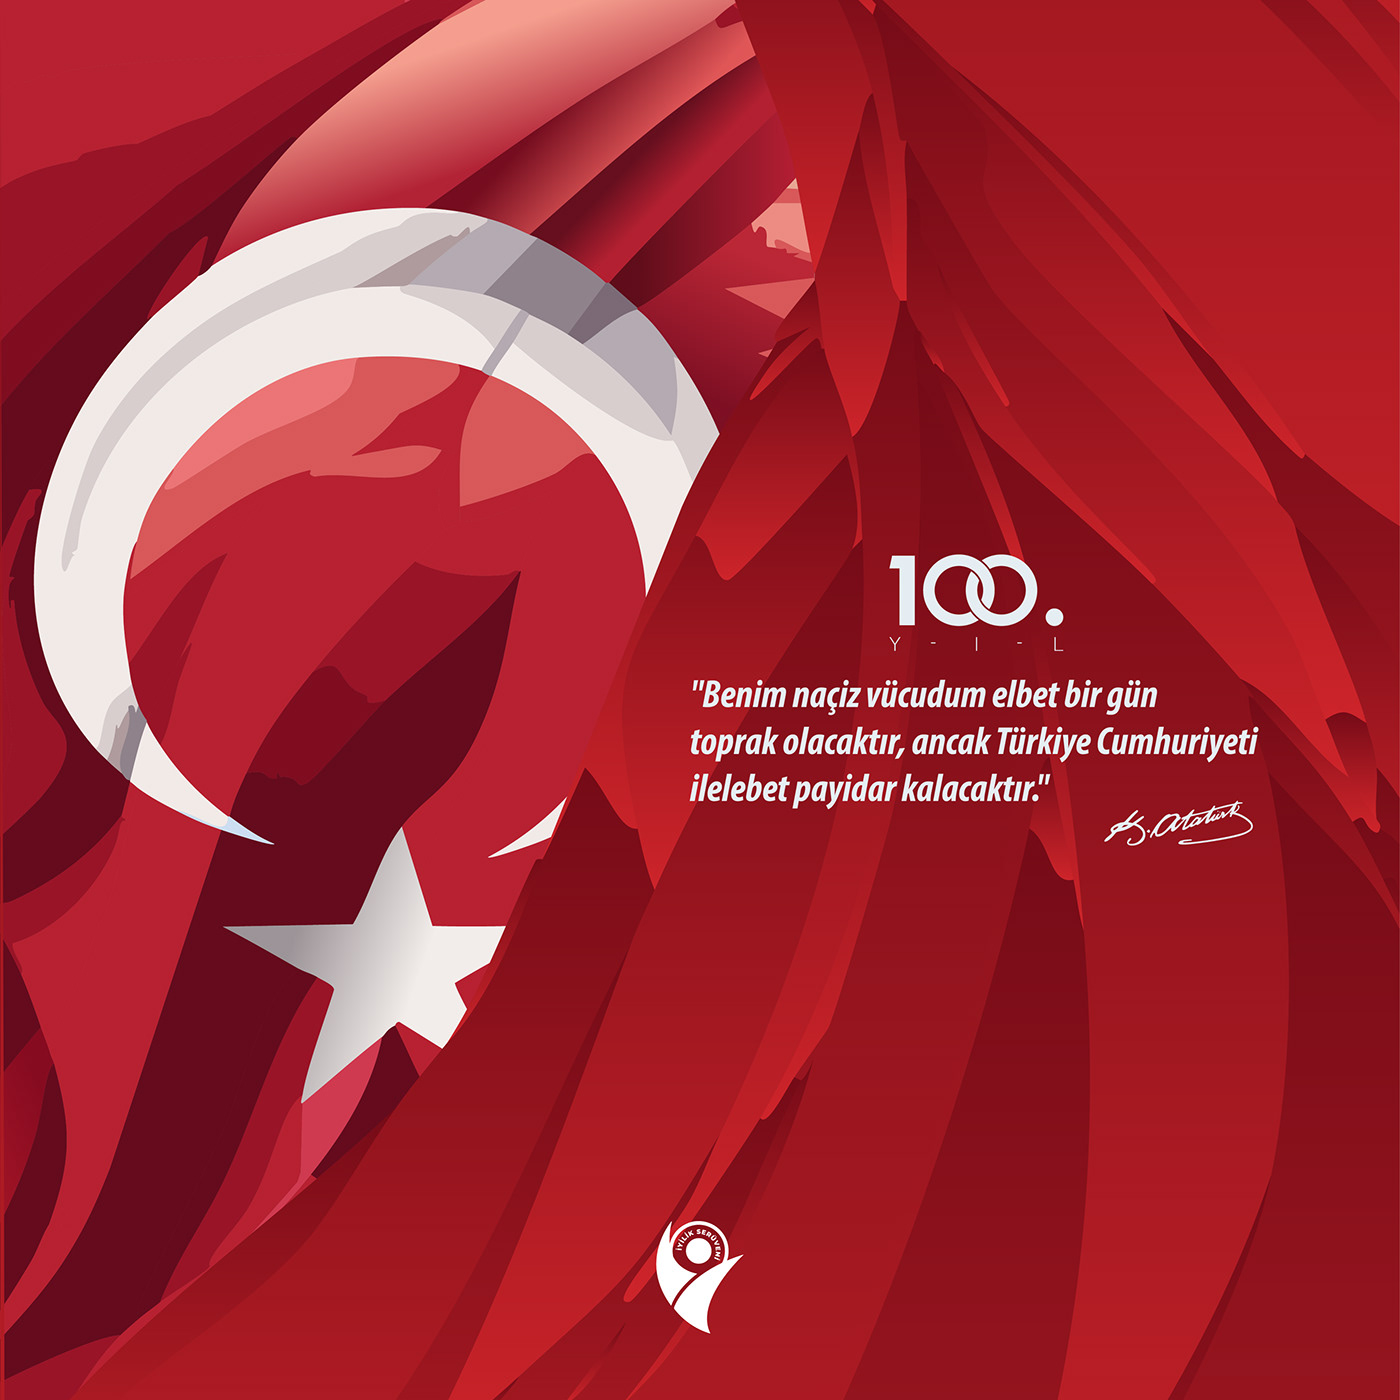 türkiye türkiye cumhuriyeti 100 years 100 yaşında Mustafa Kemal Atatürk türk bayrağı 29 ekim adobe illustrator Social media post sosyal medya